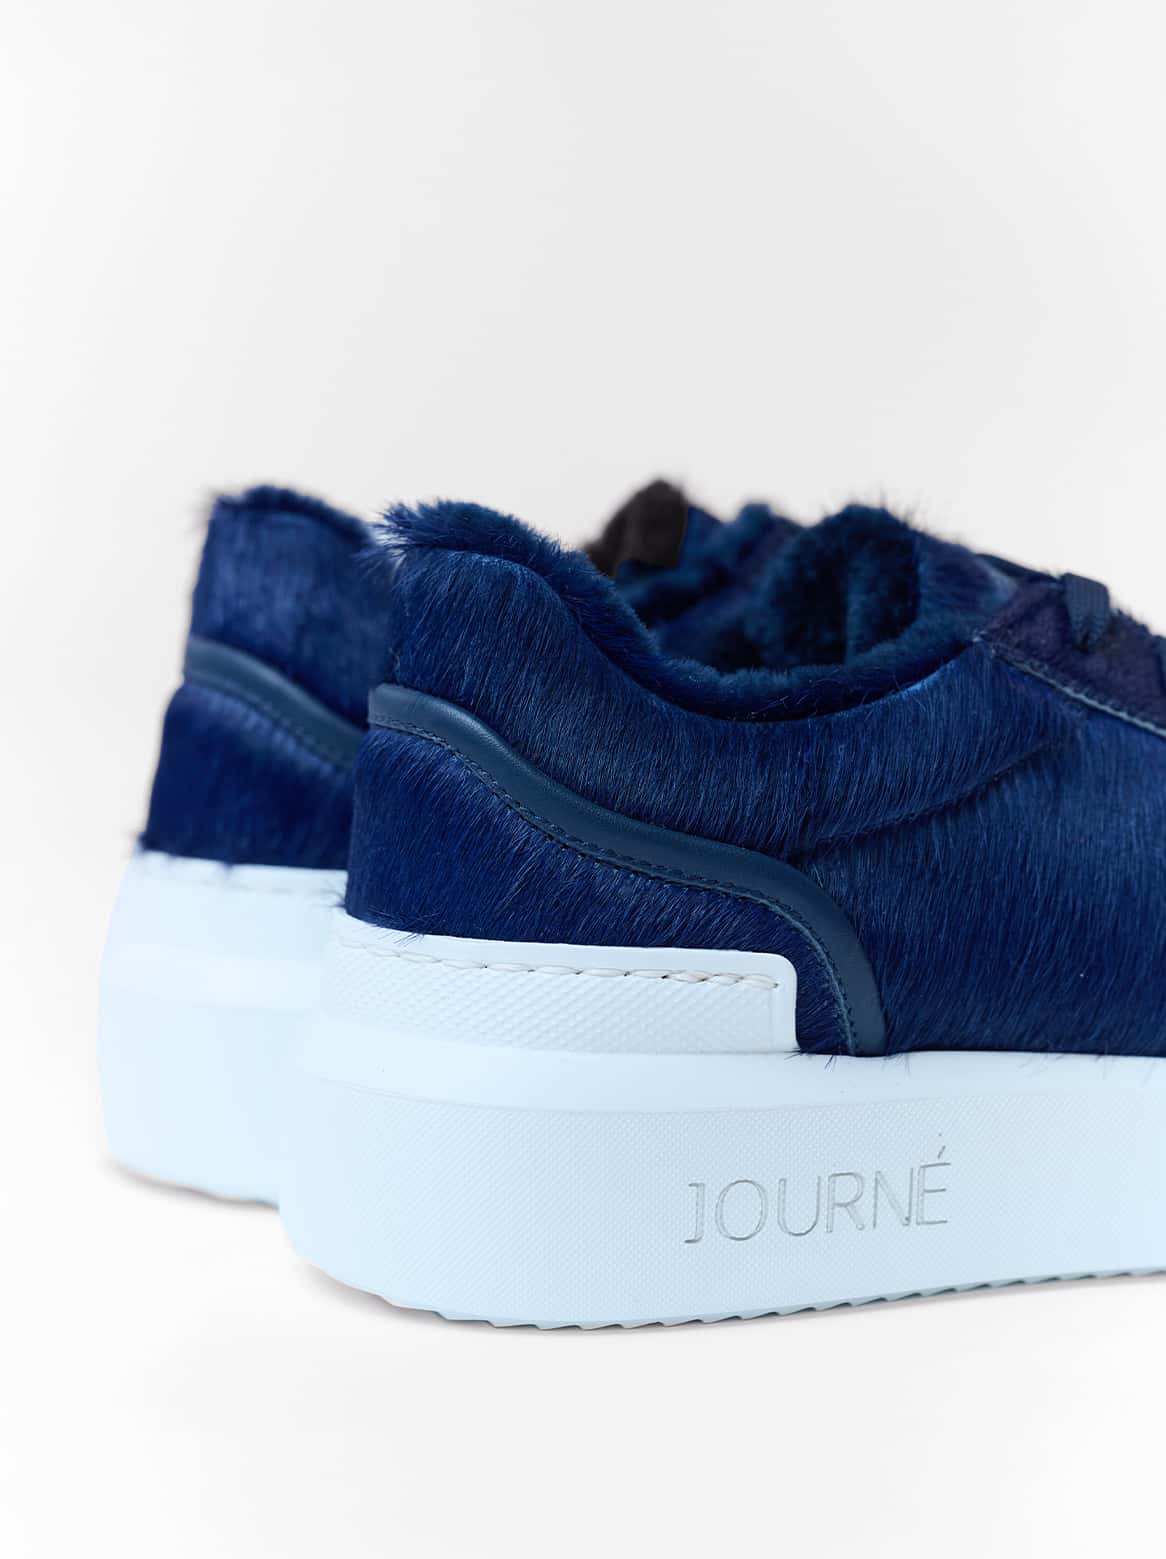 Blauer Journé Cavallino Sneaker